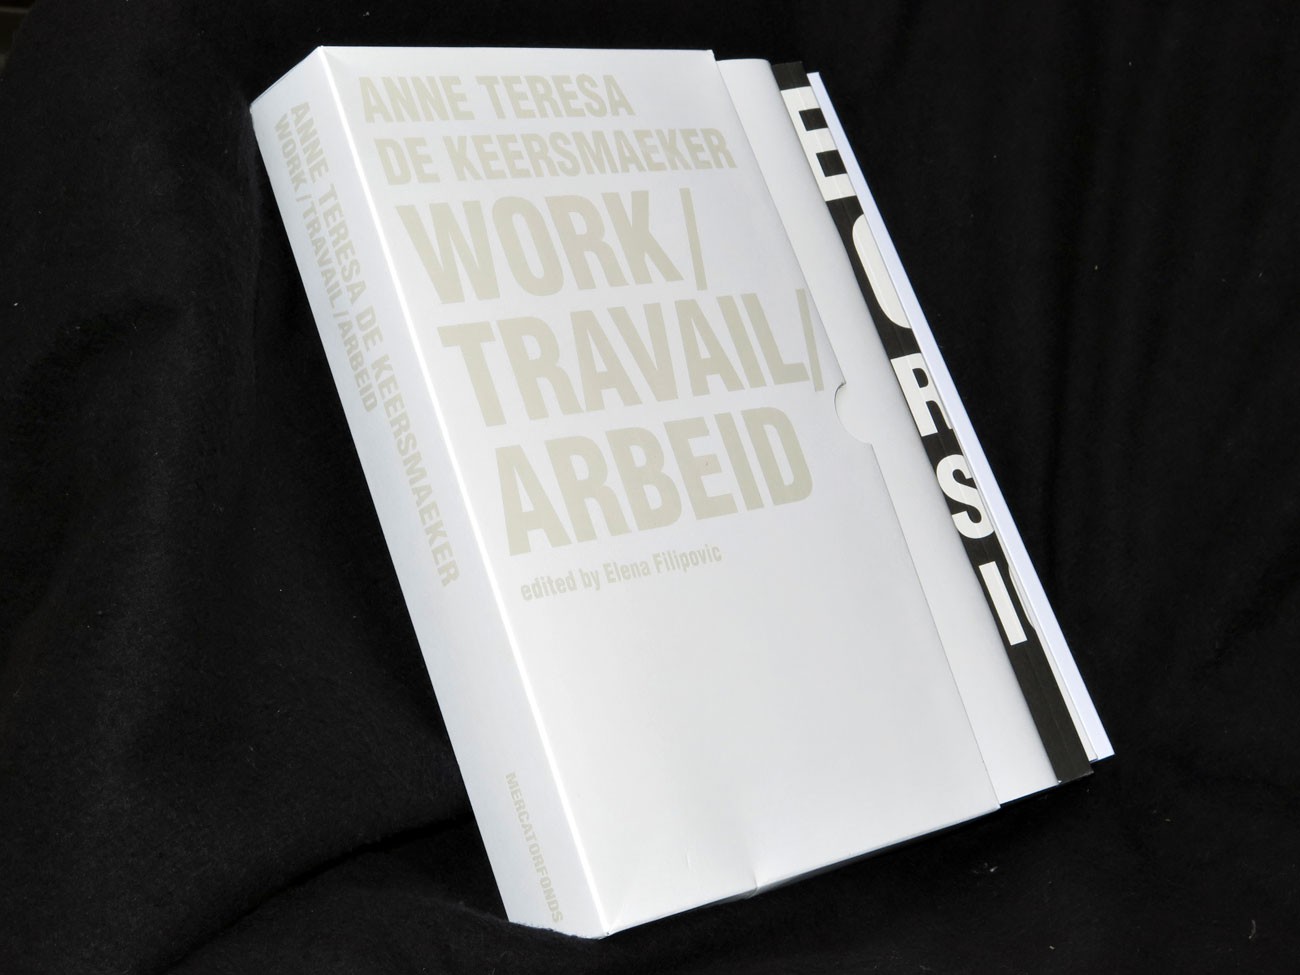 Anne Teresa de Keersmaeker - Work/Travail/Arbeid - WIELS